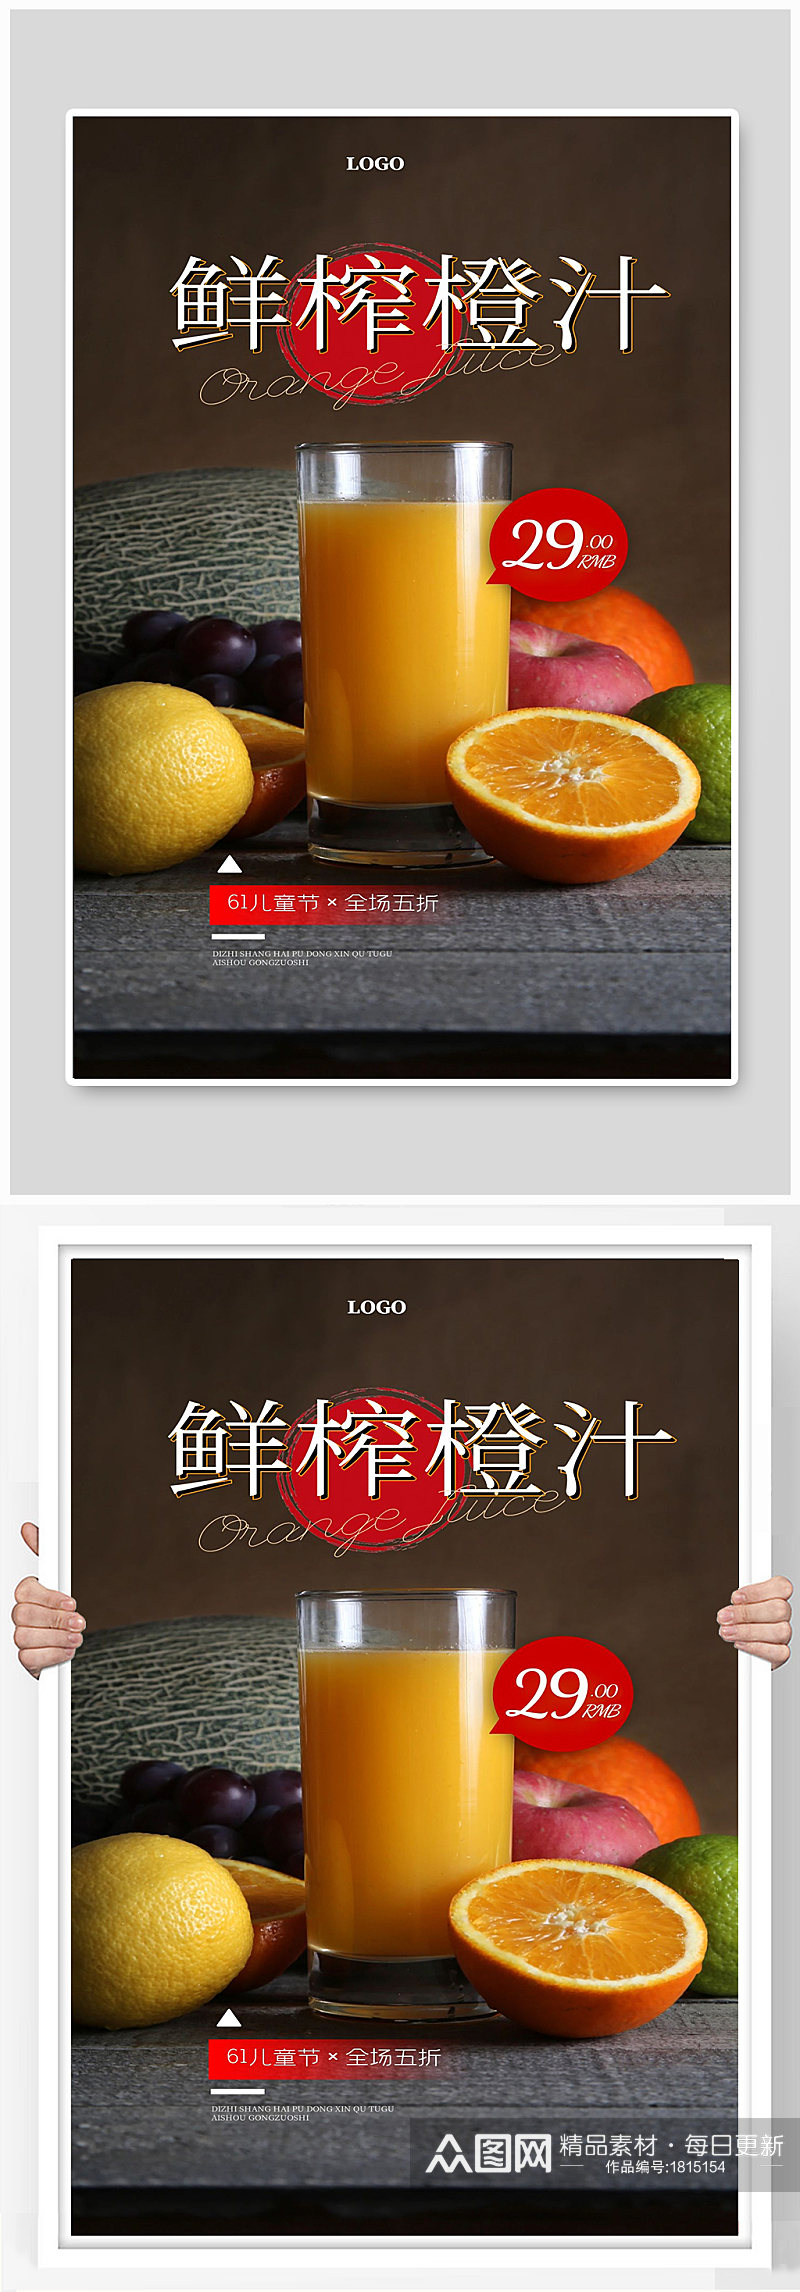 鲜榨果汁水果苹果橘子饮料宣传海报素材